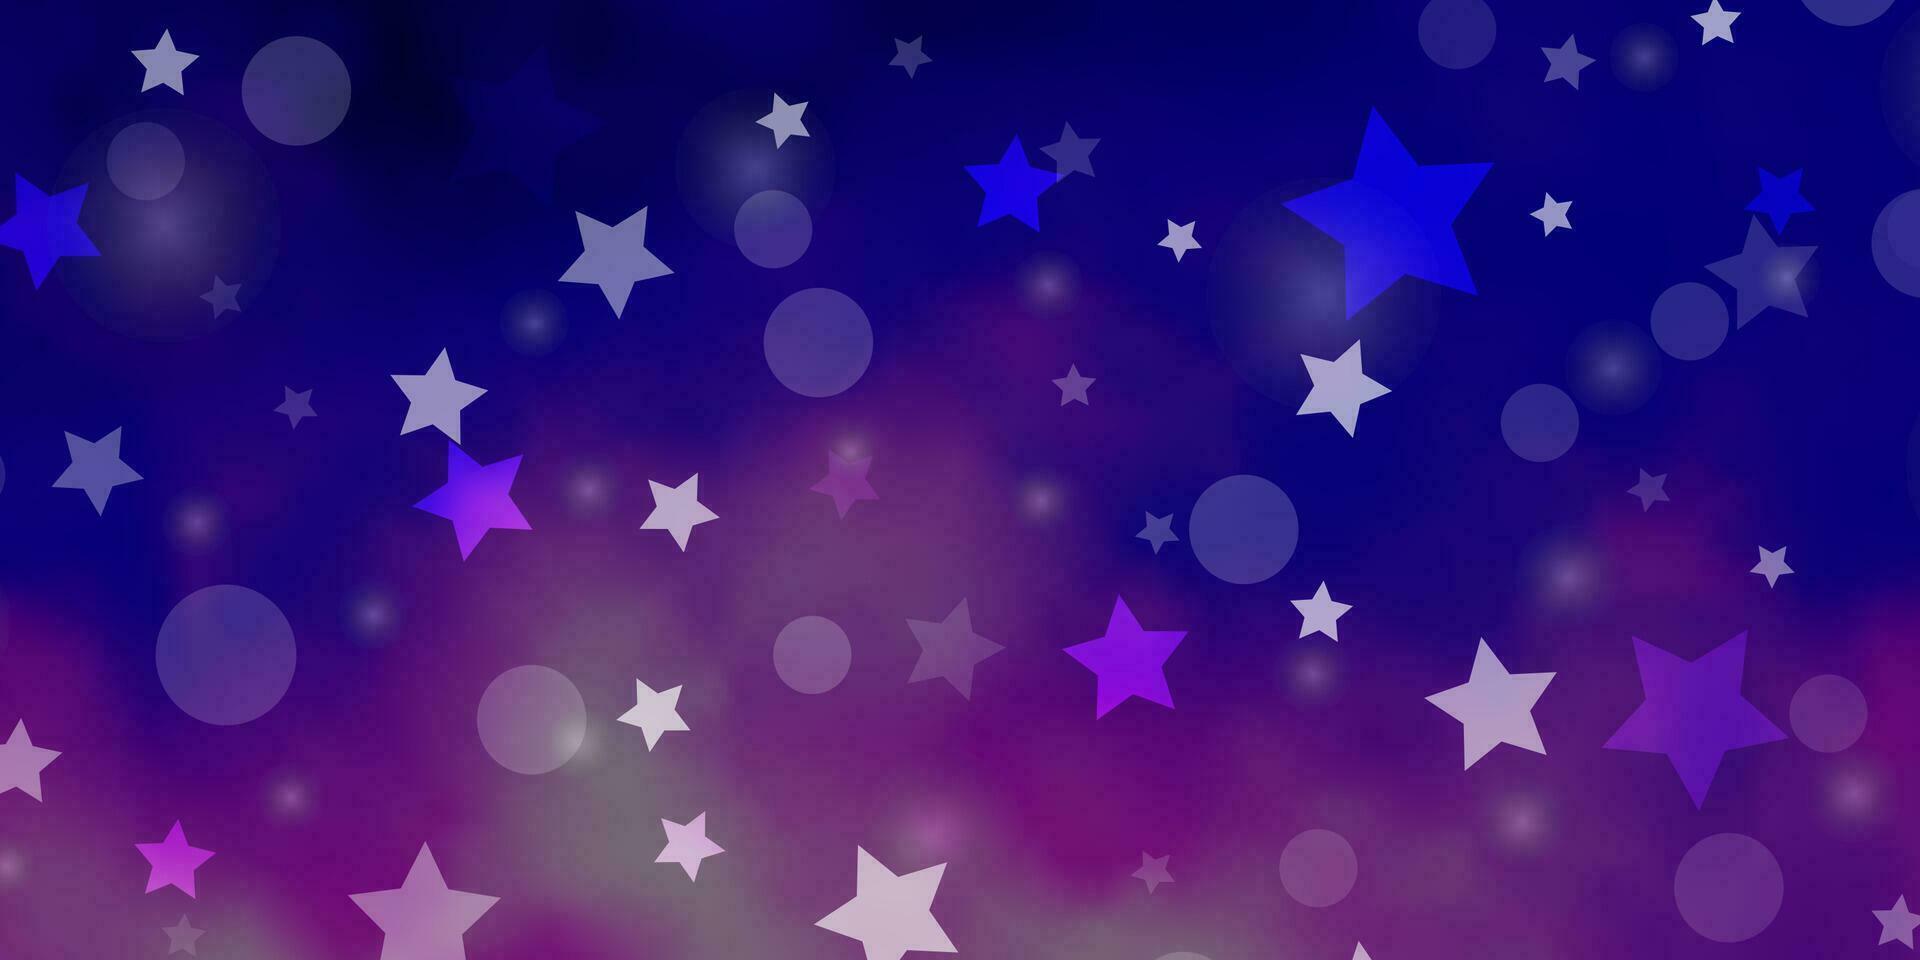 ljusrosa, blå vektorlayout med cirklar, stjärnor. vektor